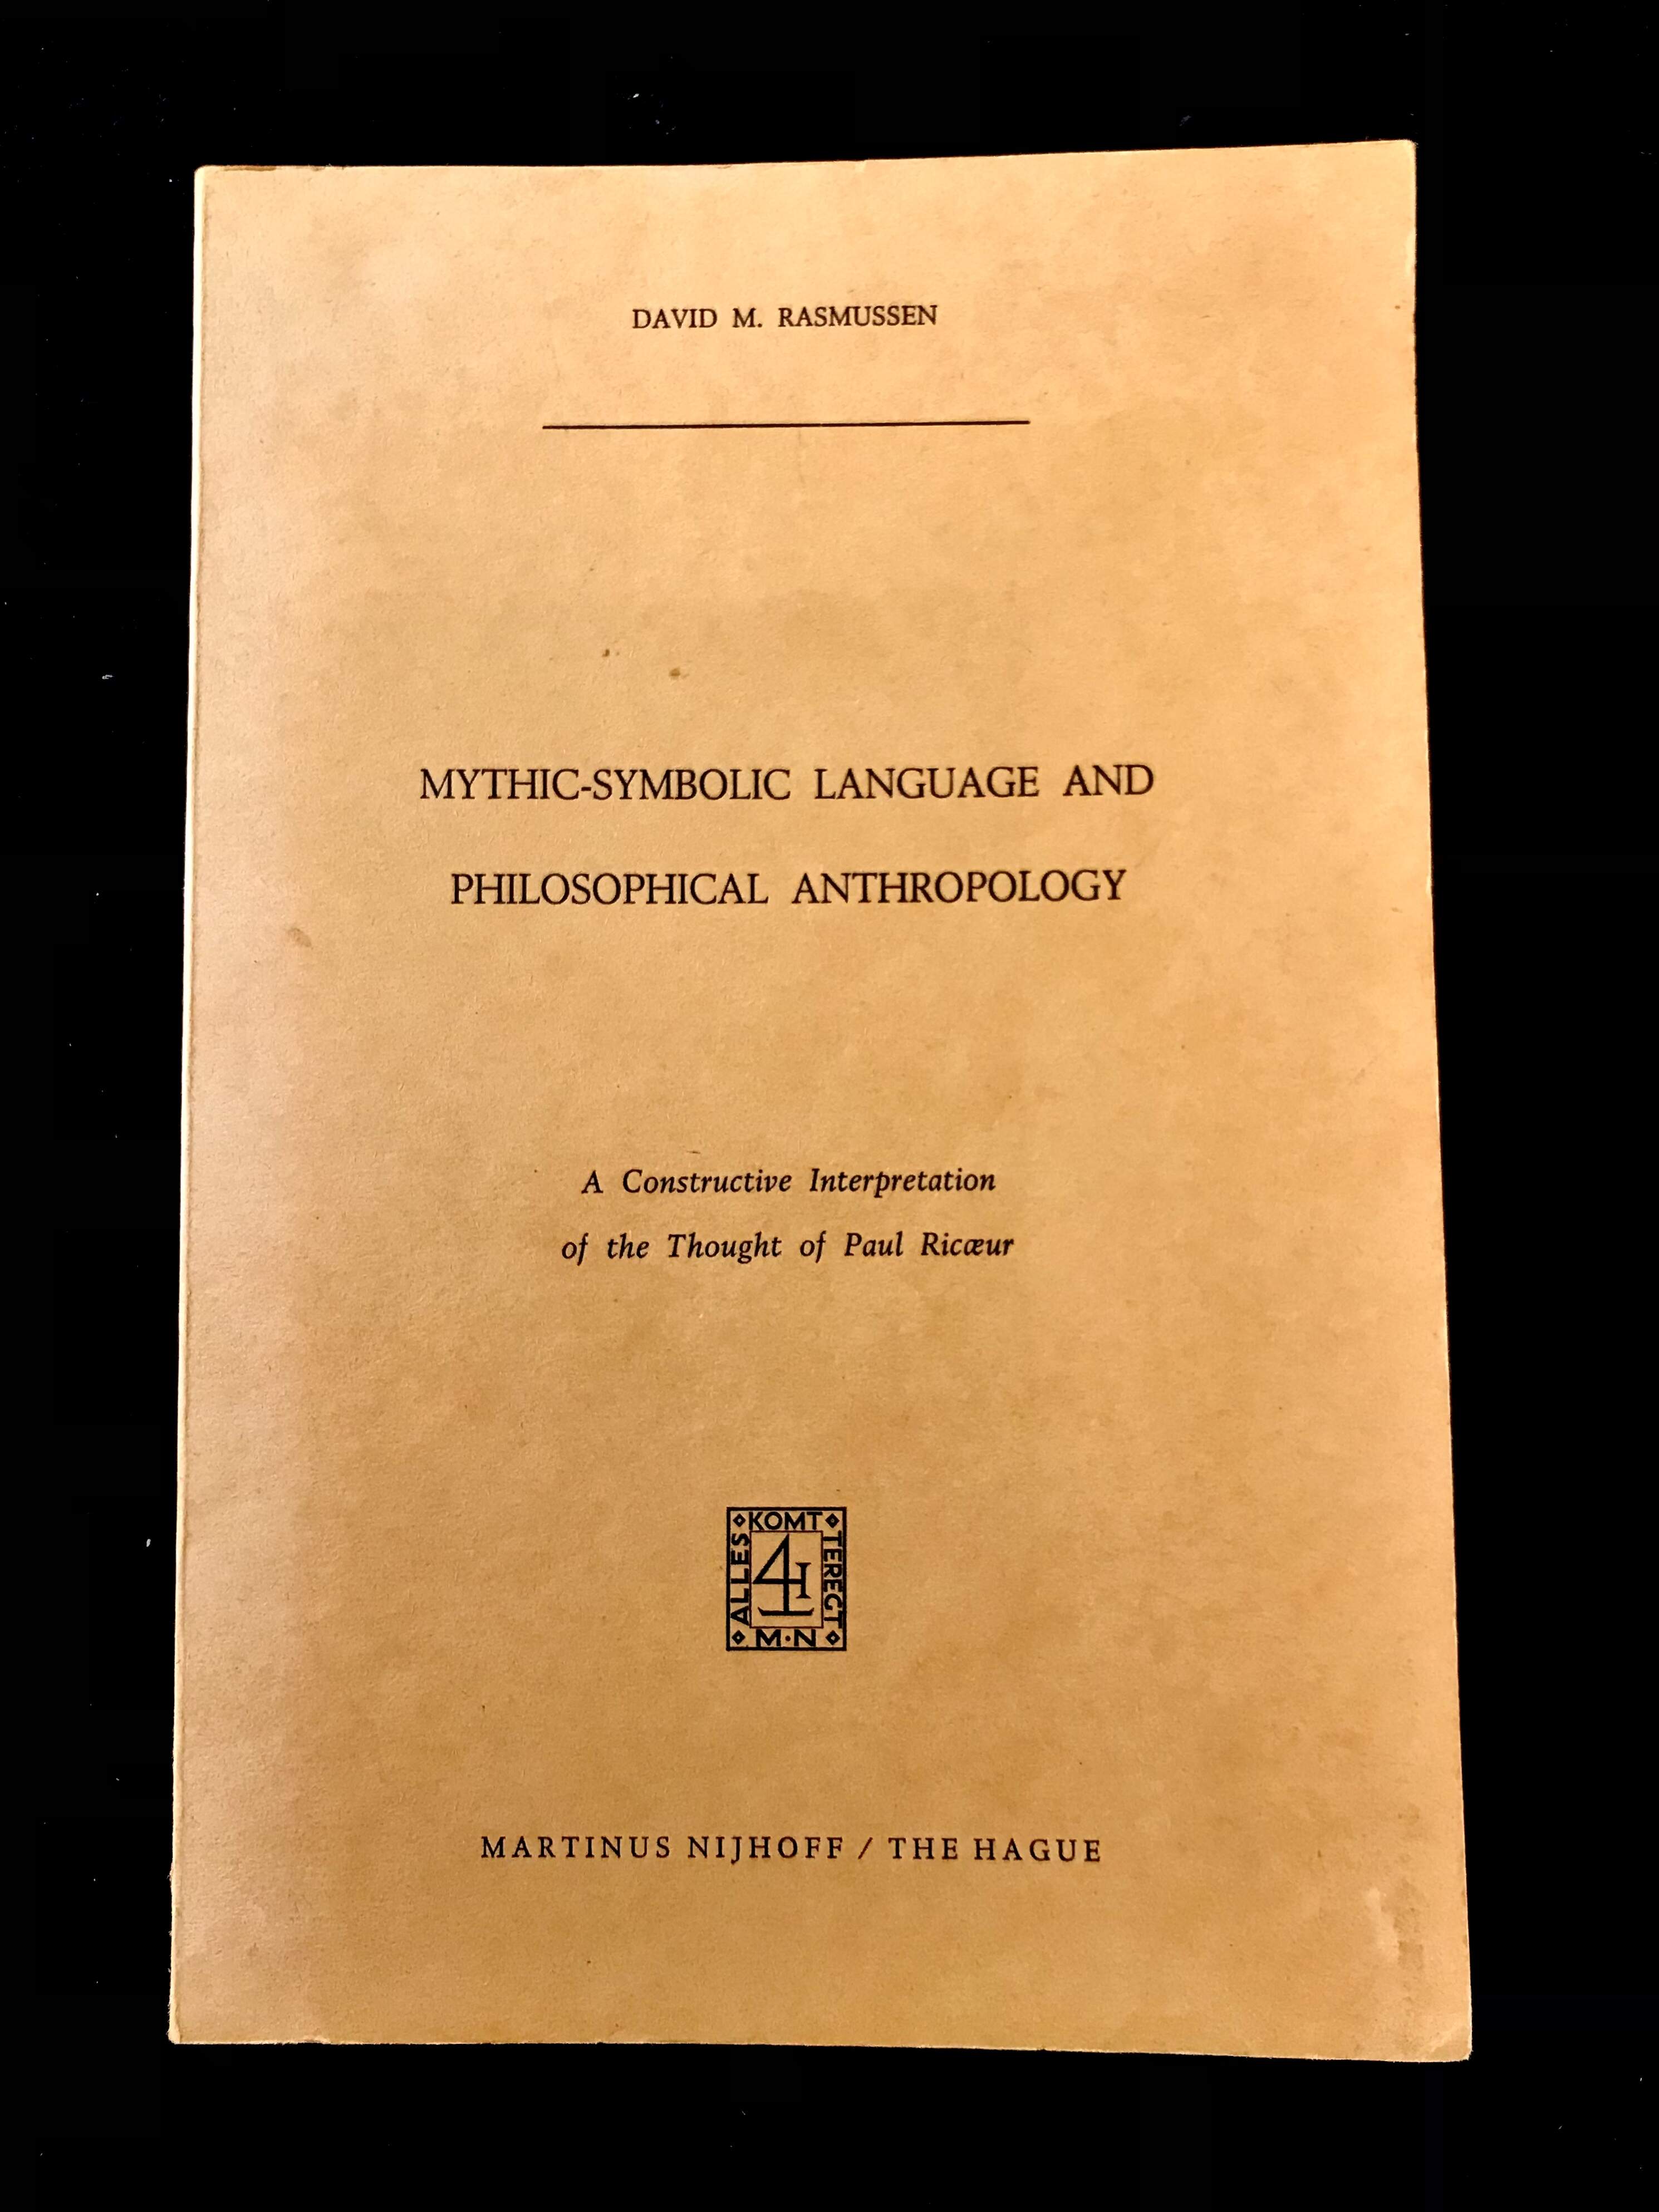 Mythic- Symbolic Language & Philosophical Anthropology by David M. Rasmussen